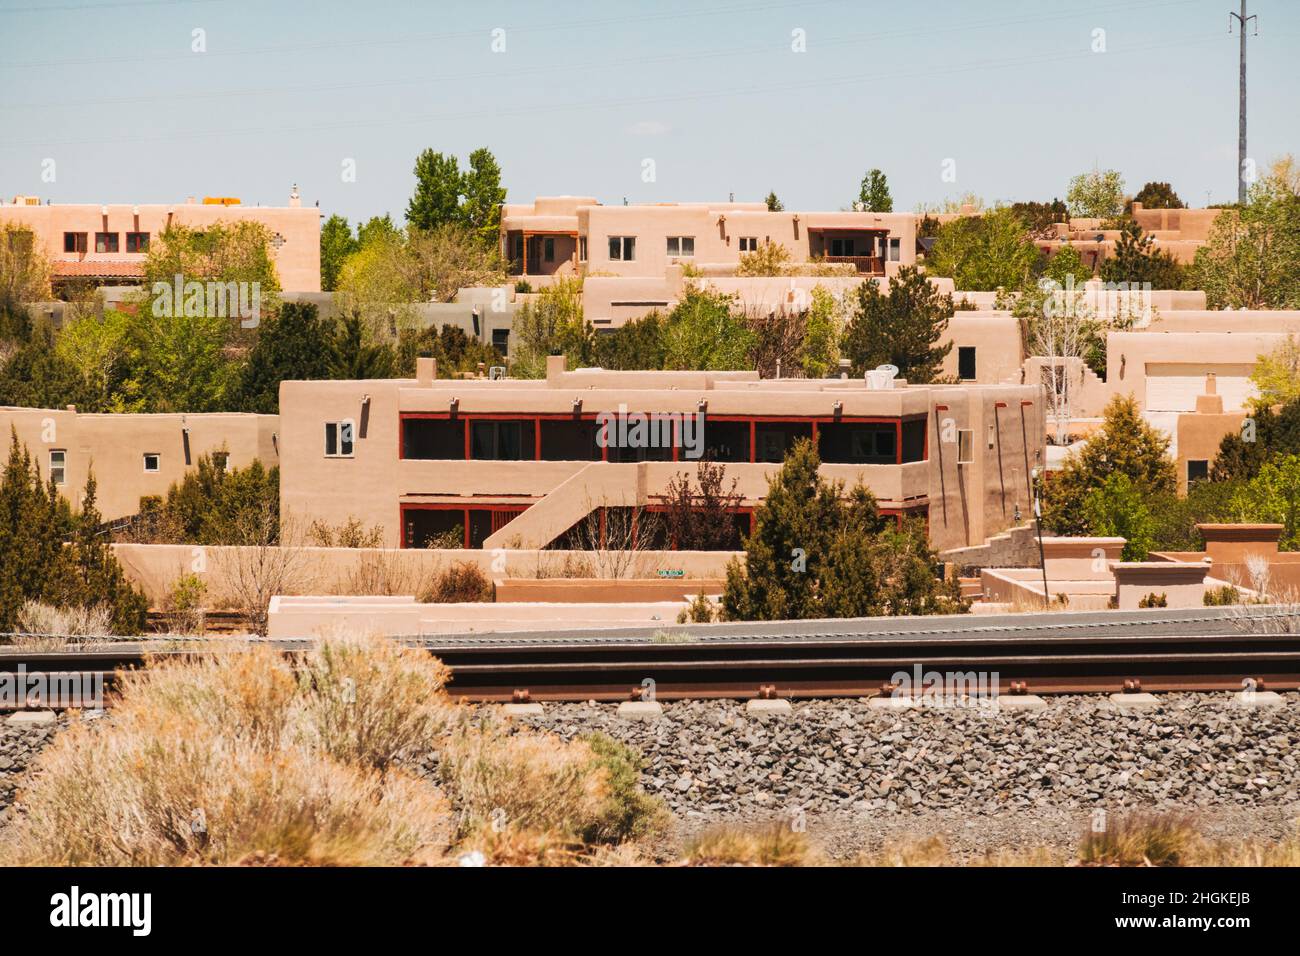 Eine Eisenbahnstrecke führt an einem Vorort von Santa Fe, New Mexico, vorbei, wo zahlreiche Häuser im adobe-Stil gebaut wurden Stockfoto